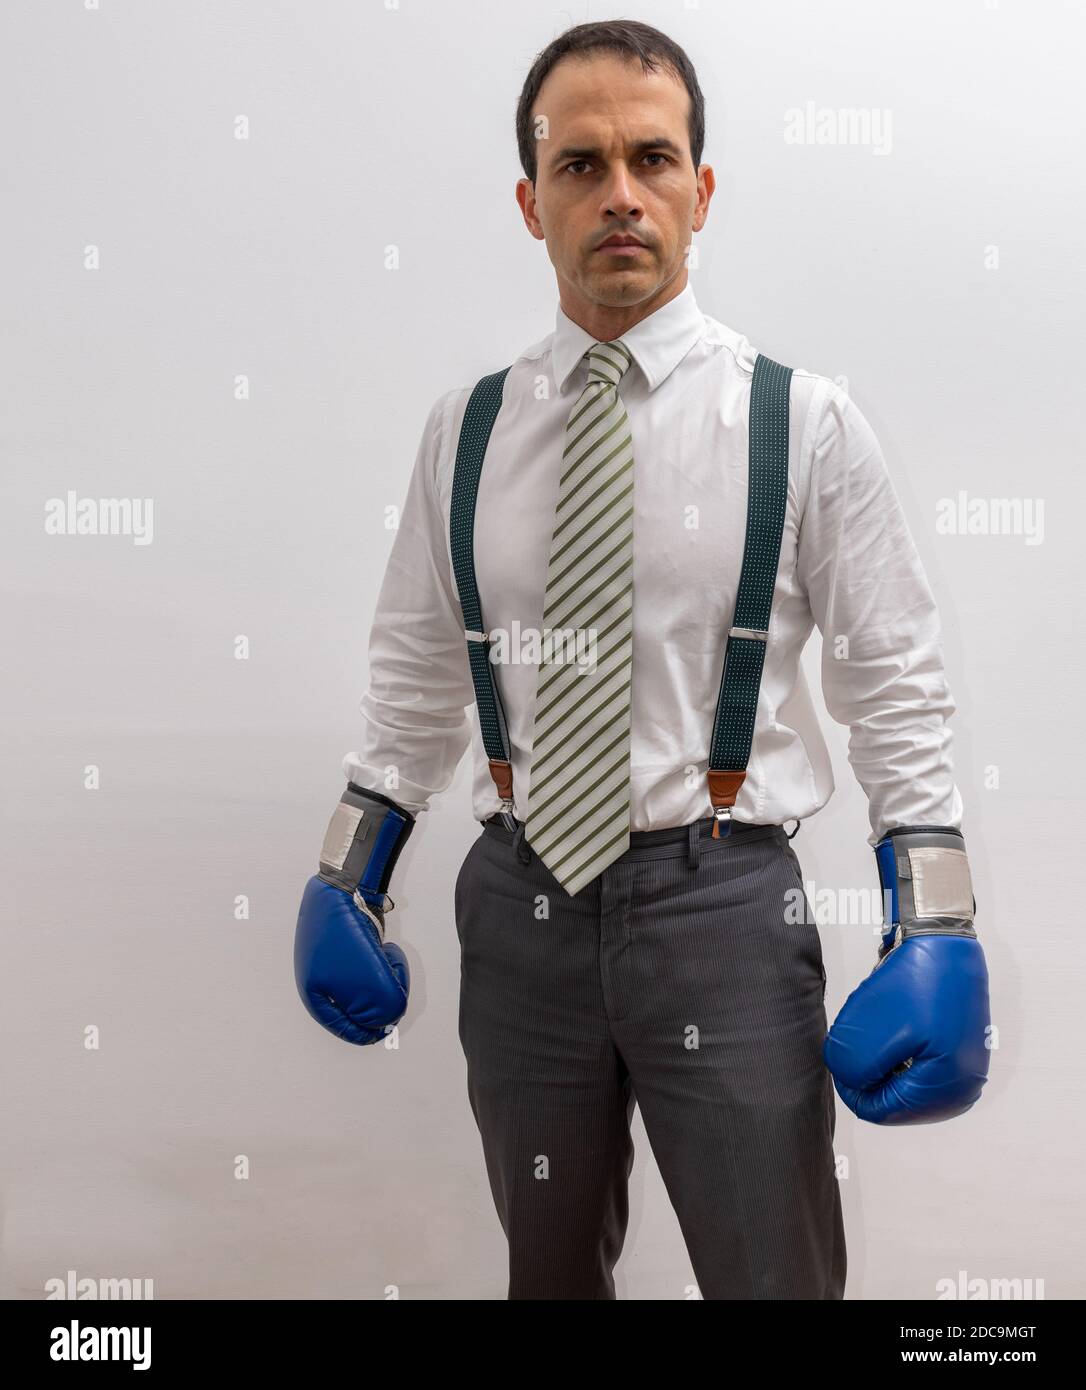 Homme debout avec des vêtements formels, bretelles, cravate, gant de boxe  et regardant la caméra Photo Stock - Alamy